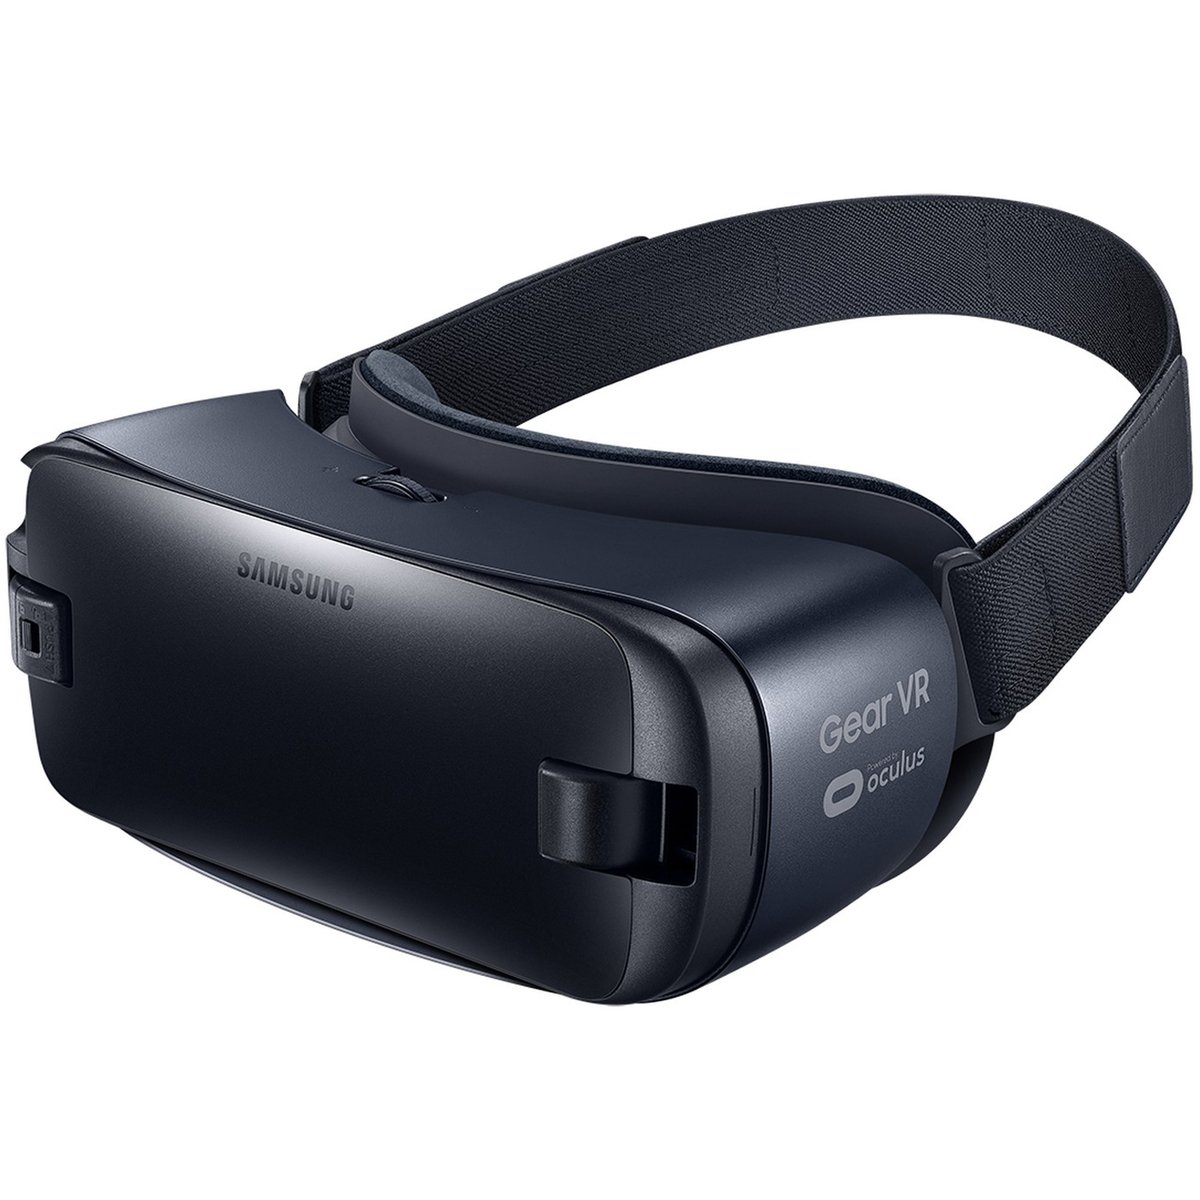 نظارة الواقع الإفتراضي سامسونج جير في ار 2  - اسود، GVR2-R323